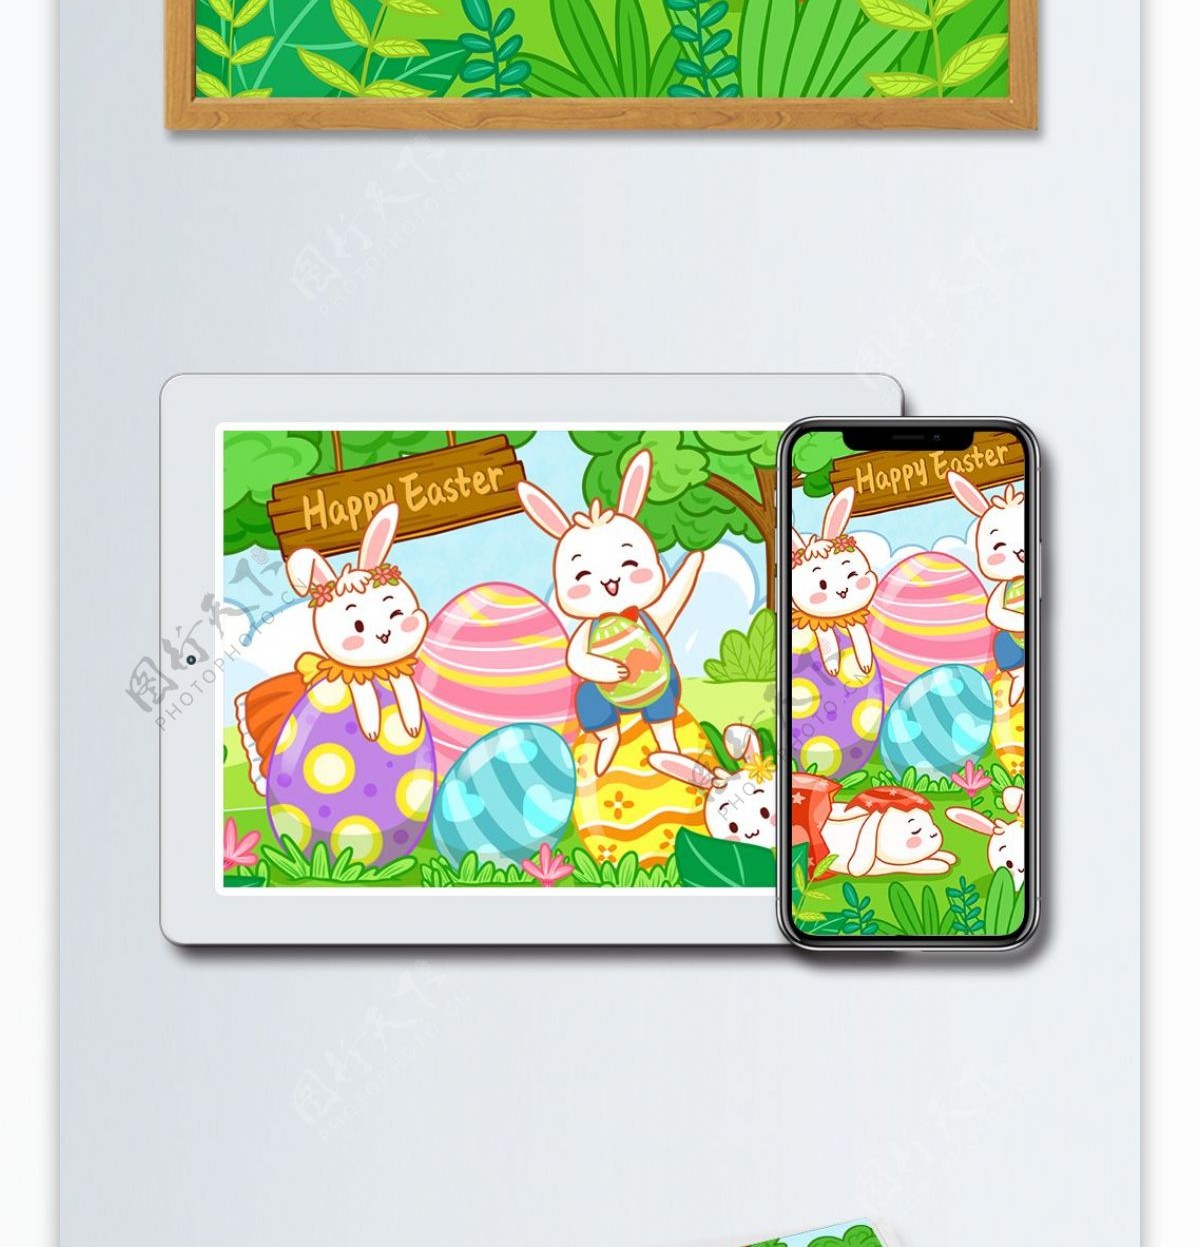 复活节快乐可爱彩蛋小兔子手绘插画